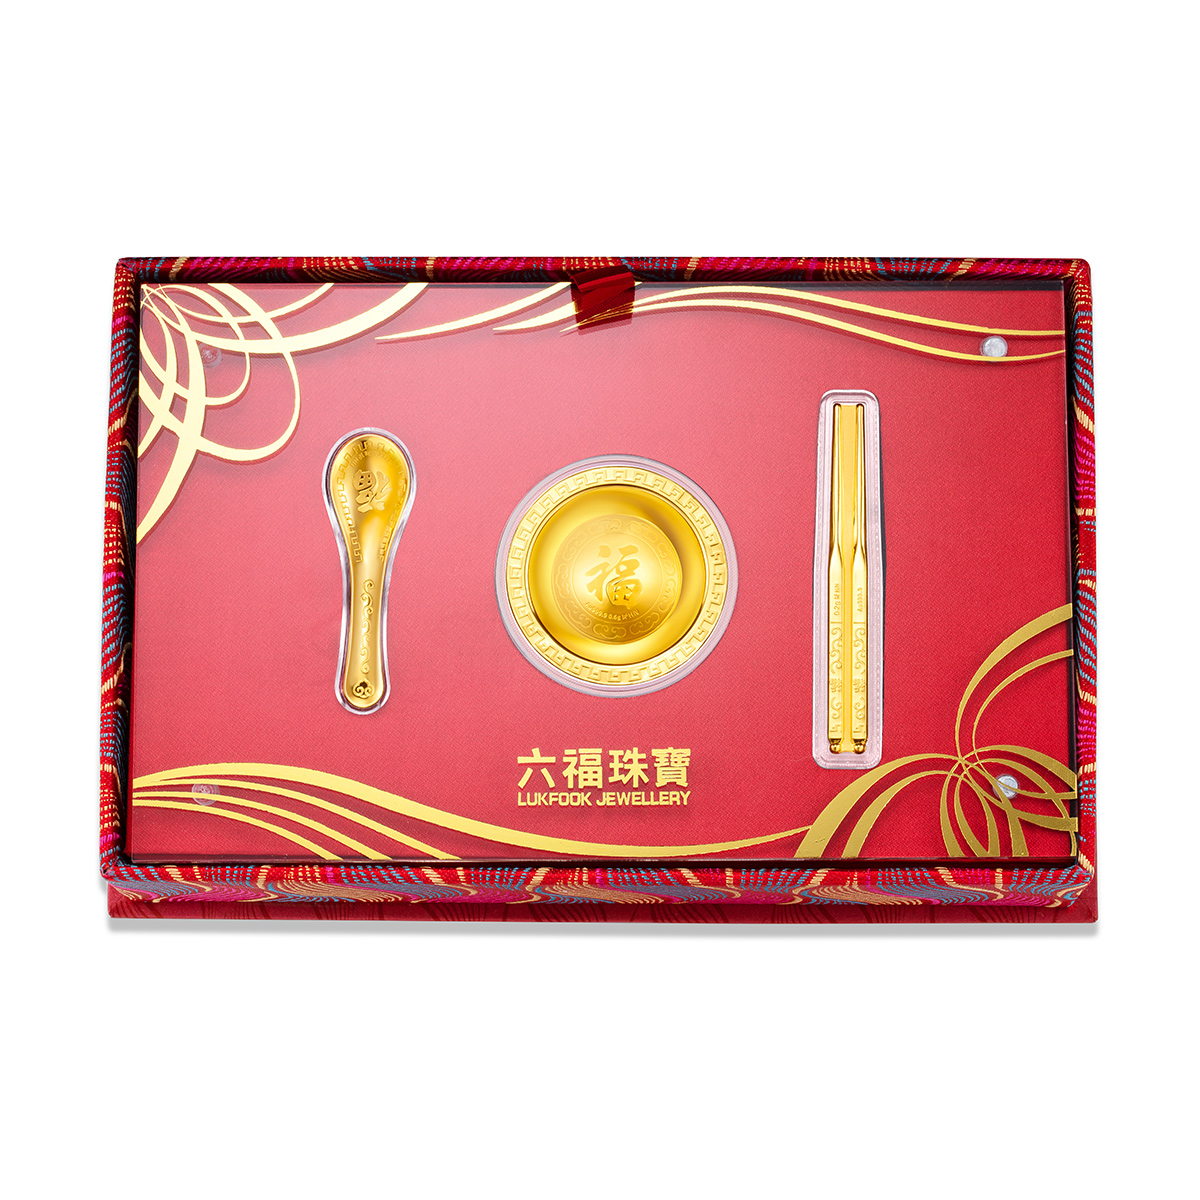 六福珠寶黃金工藝品 - "聚寶金飯碗套裝"千足金工藝品